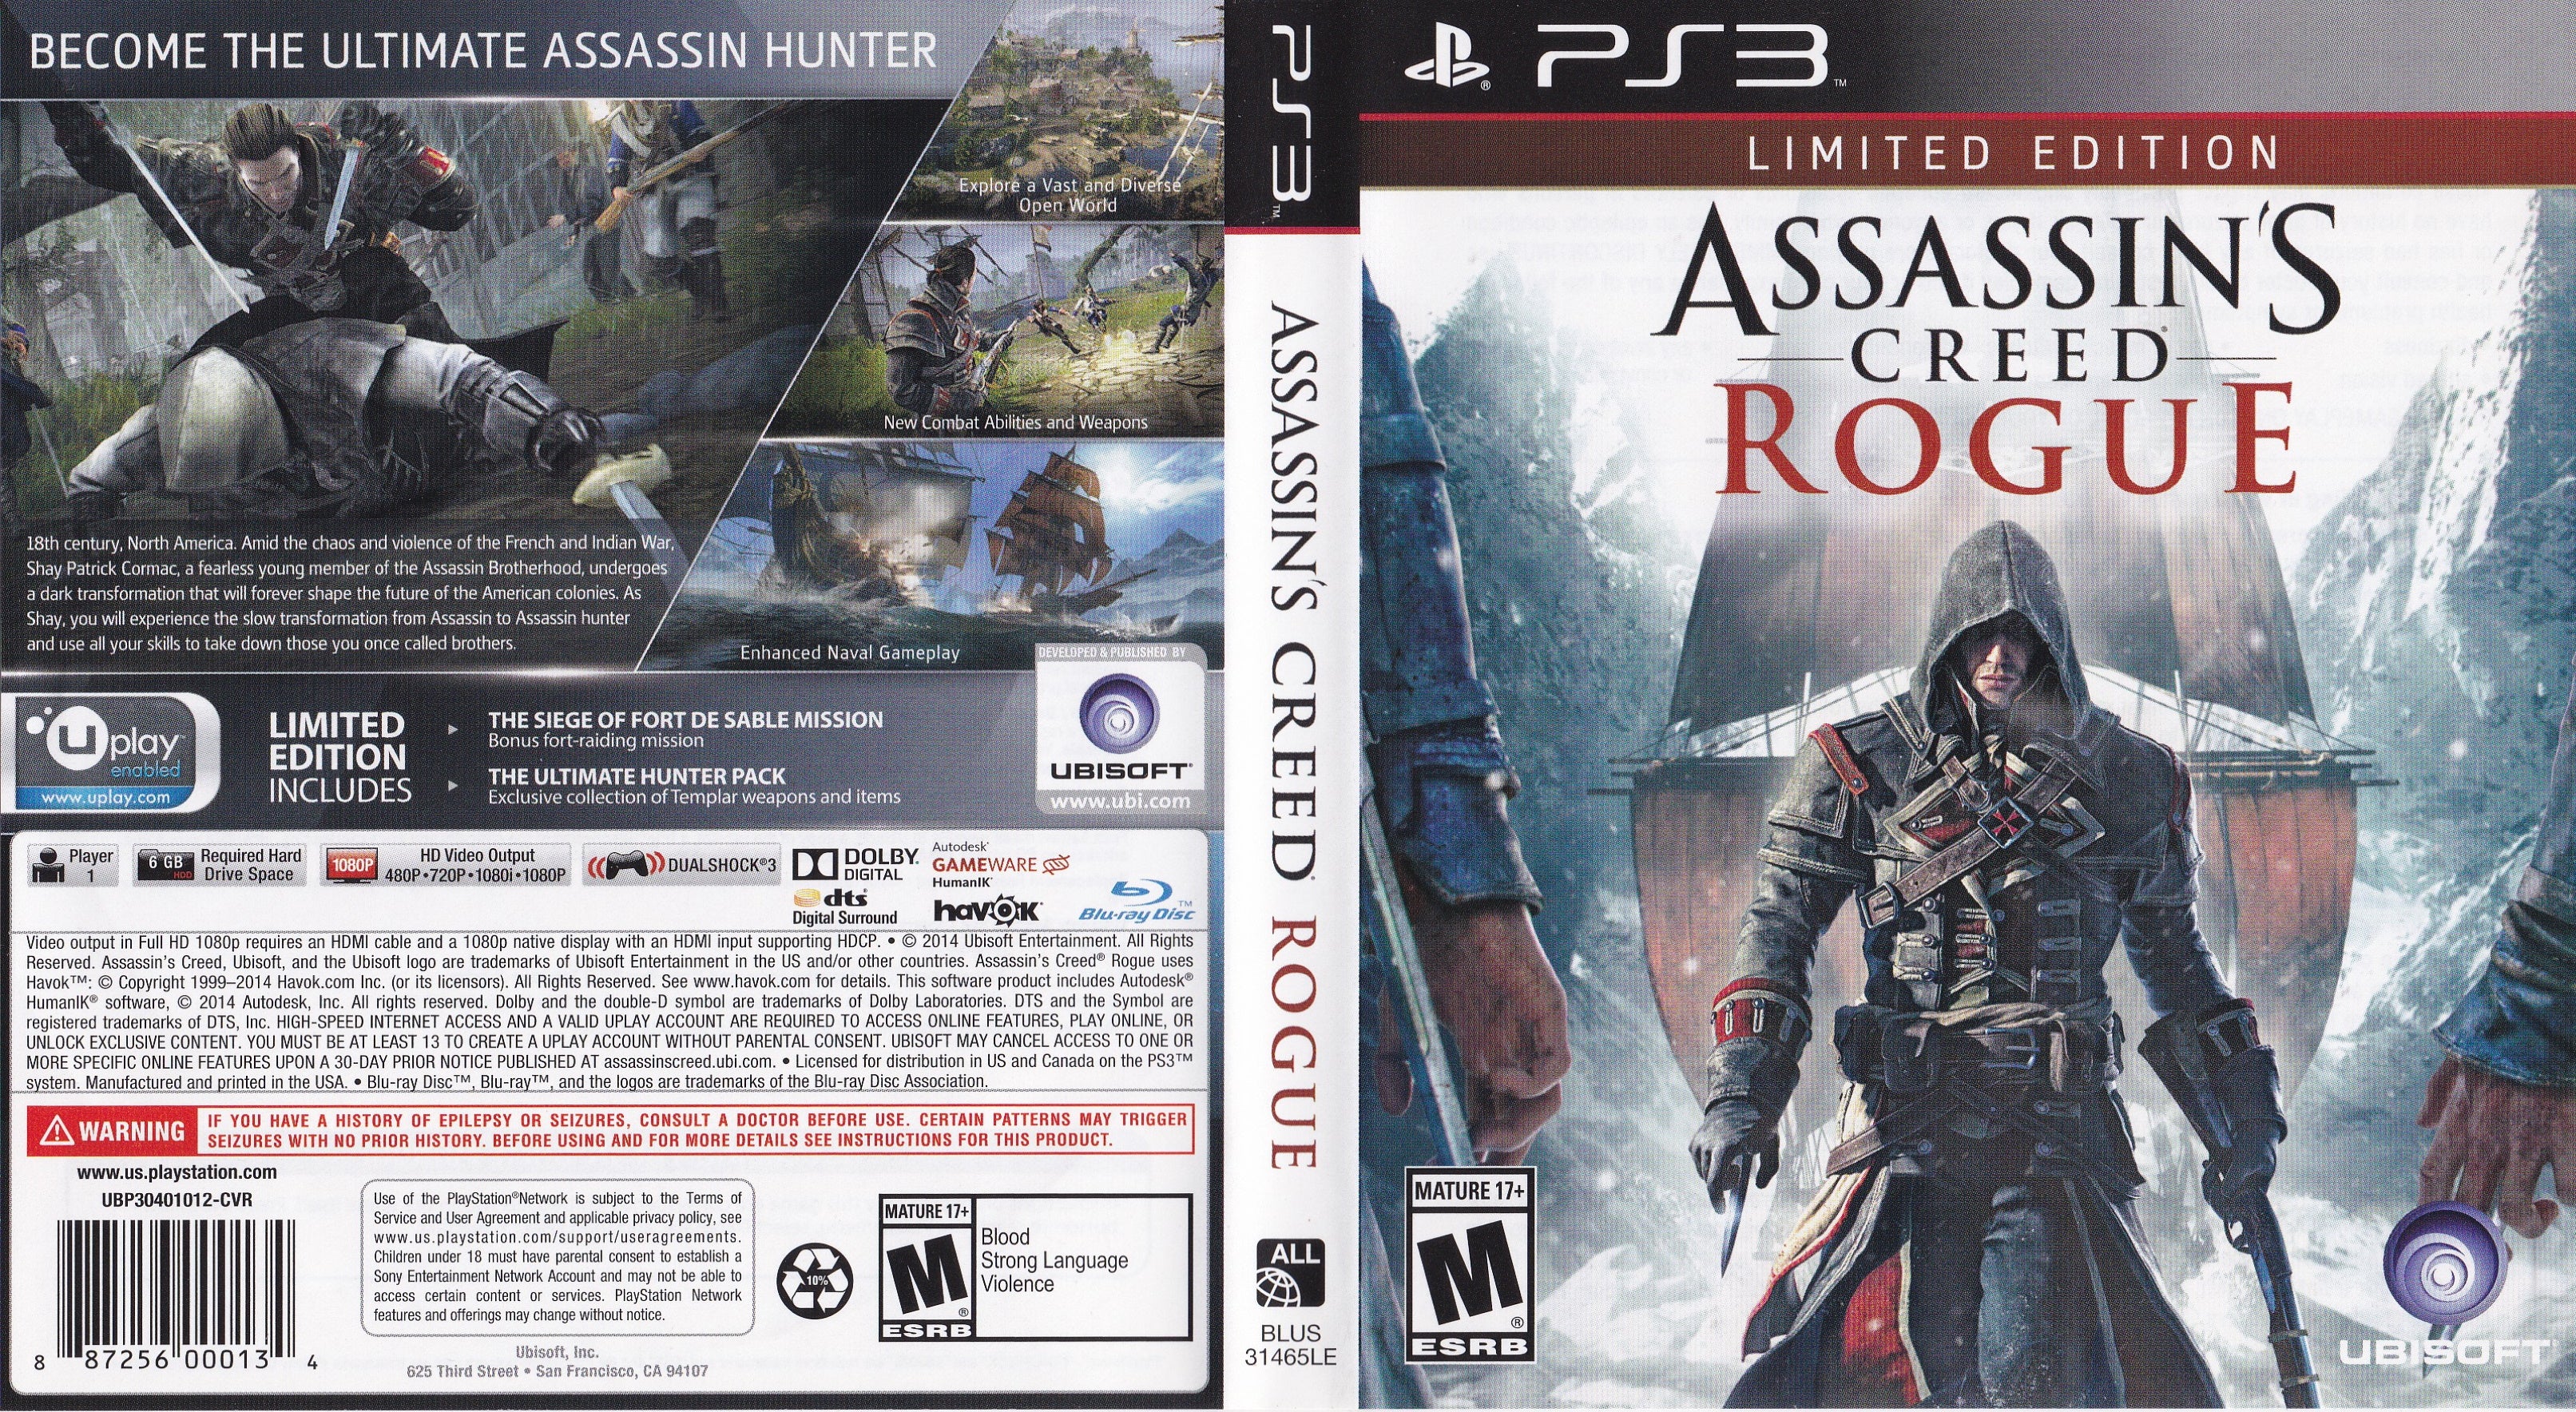 Assassins Creed Rogue Ps3 Psn